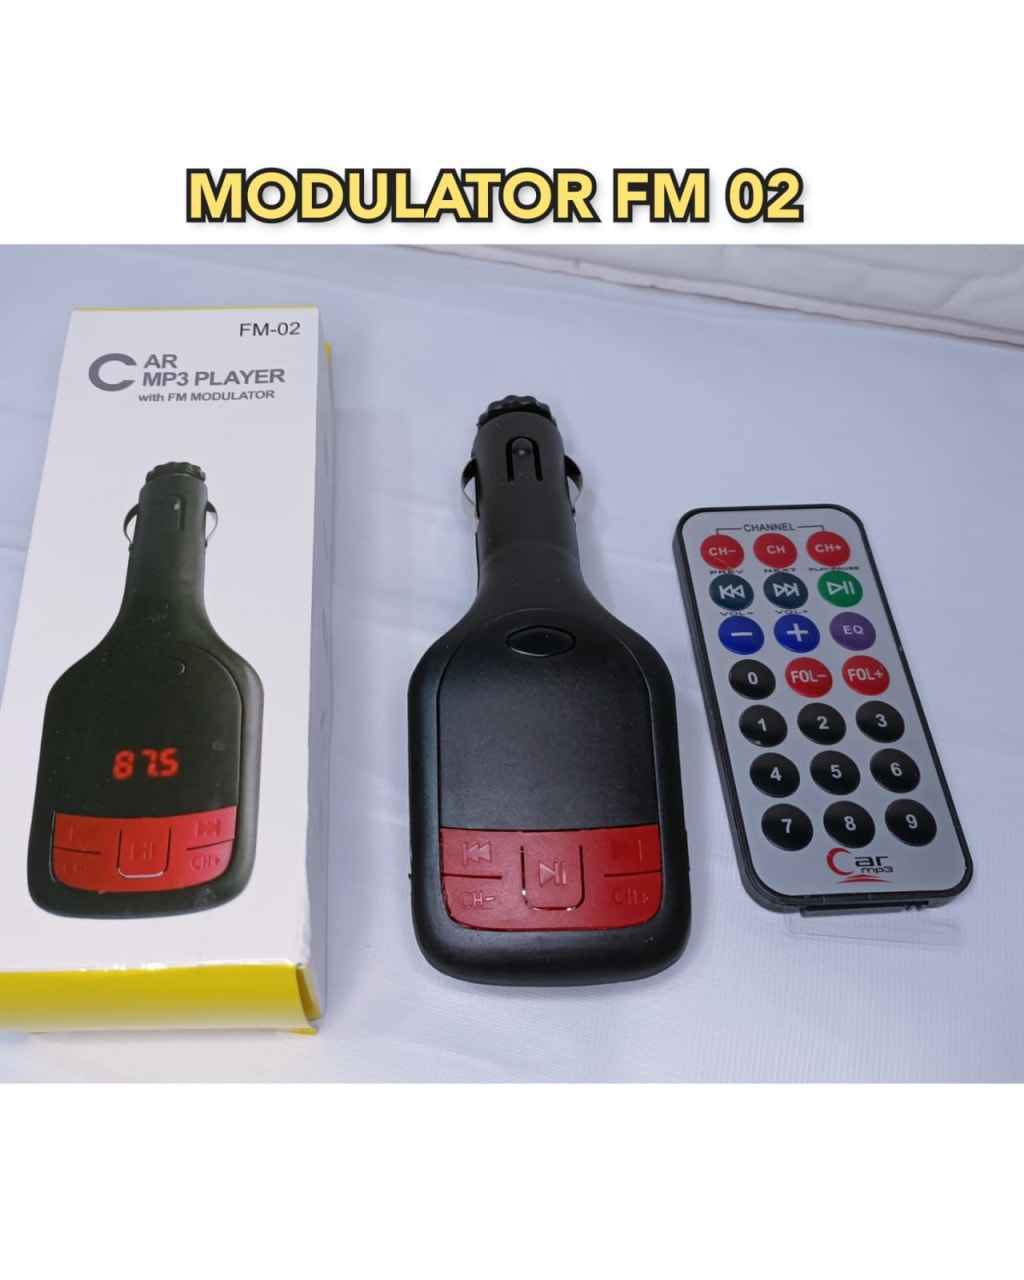 MODULATOR FM 02 di qeong.com